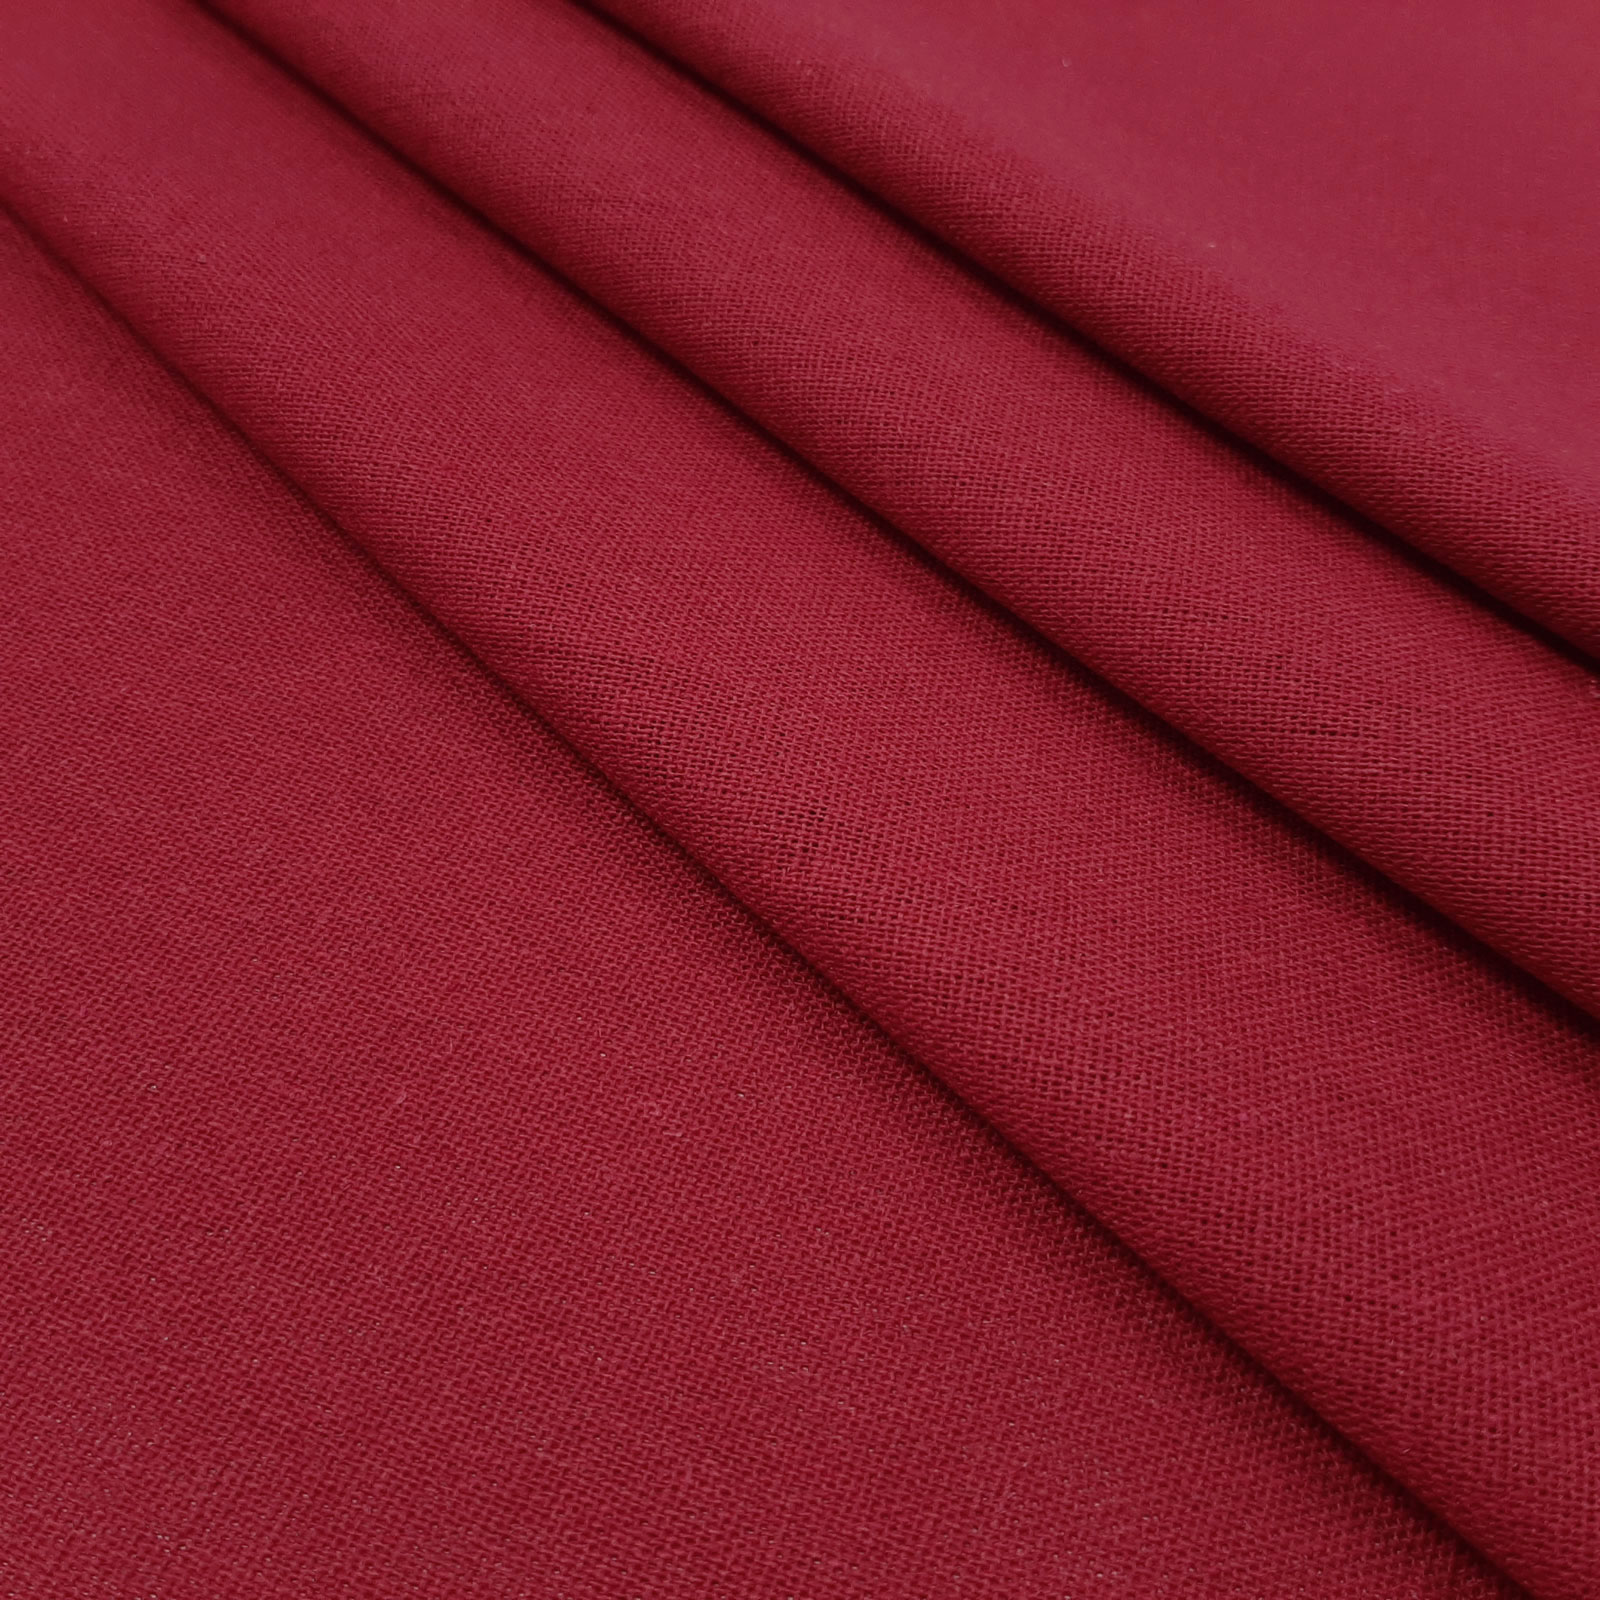 Bella - tecido de linho natural de algodão - Vermelho Escuro